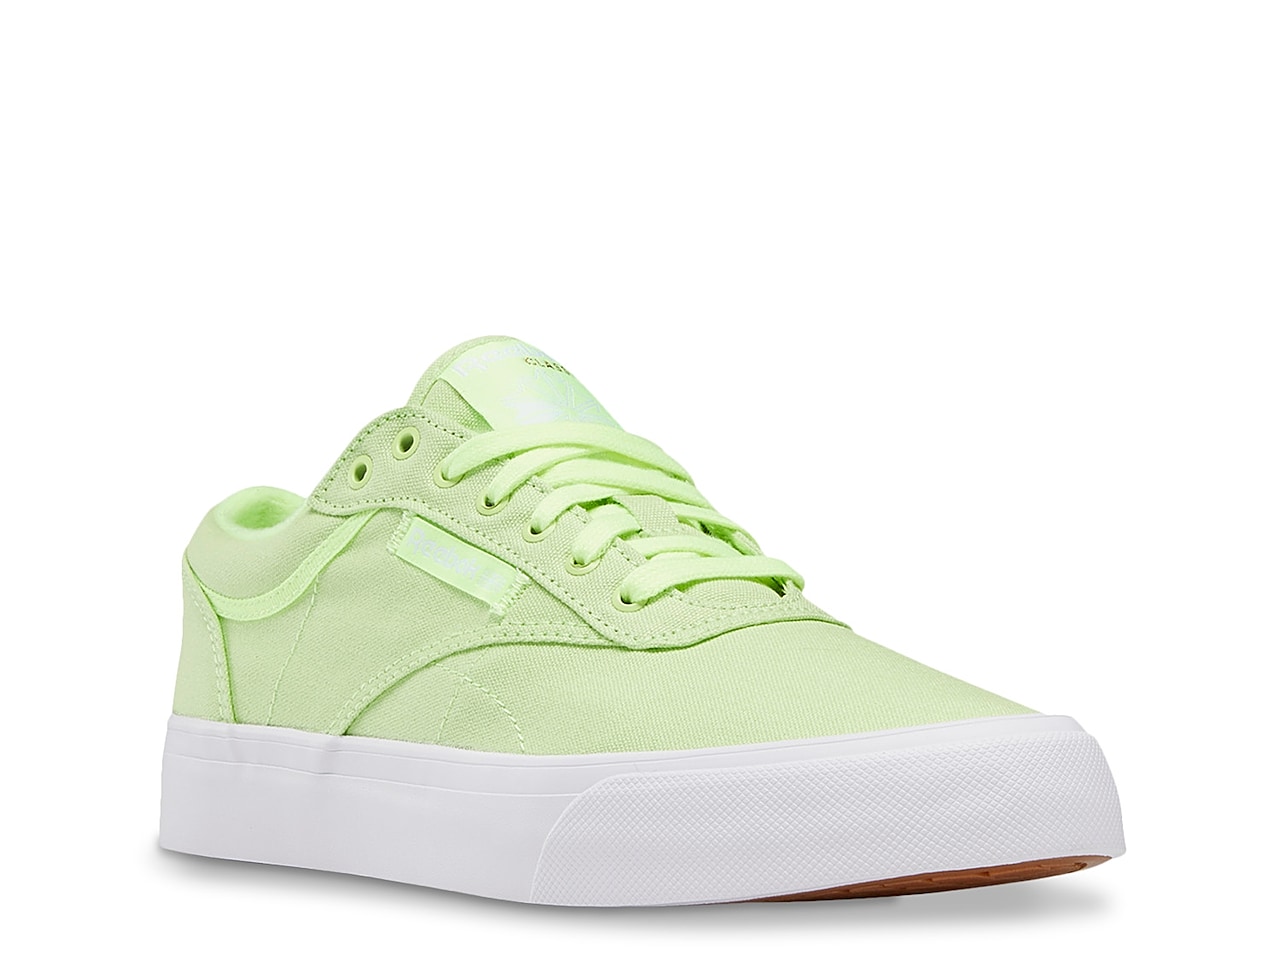 Reebok Club C Coast Sneaker - Women's : Color - Neon Green, Size - 7.5 (516474)